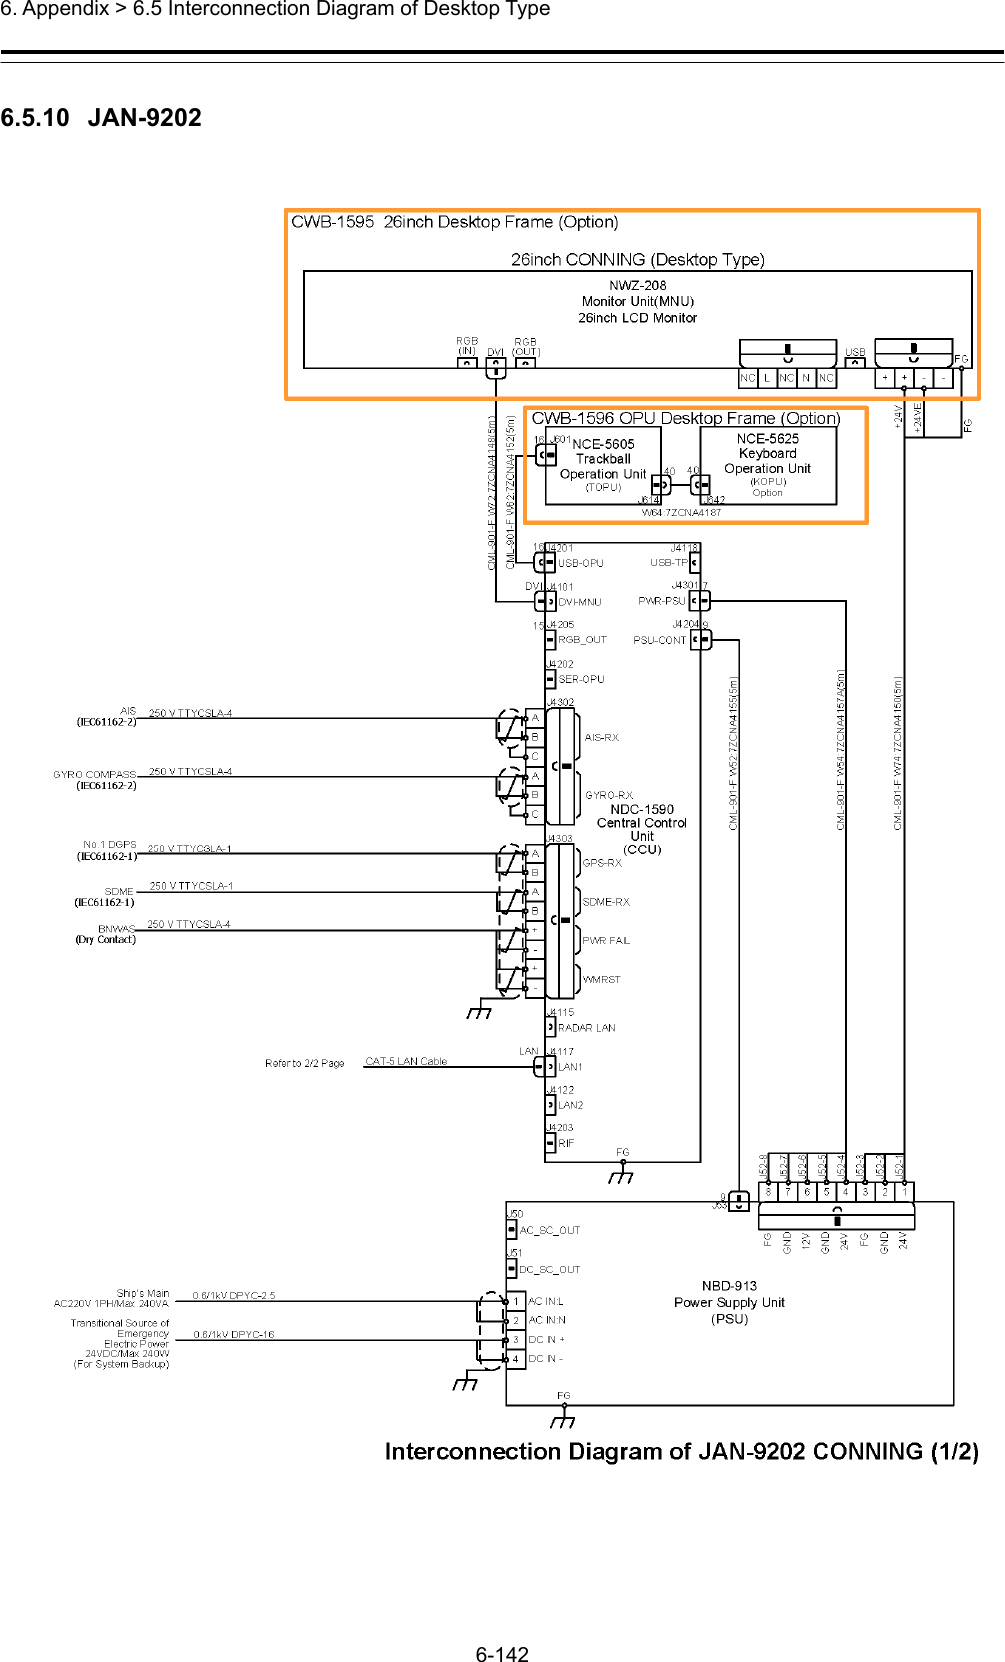  6. Appendix &gt; 6.5 Interconnection Diagram of Desktop Type 6-142  6.5.10  JAN-9202  